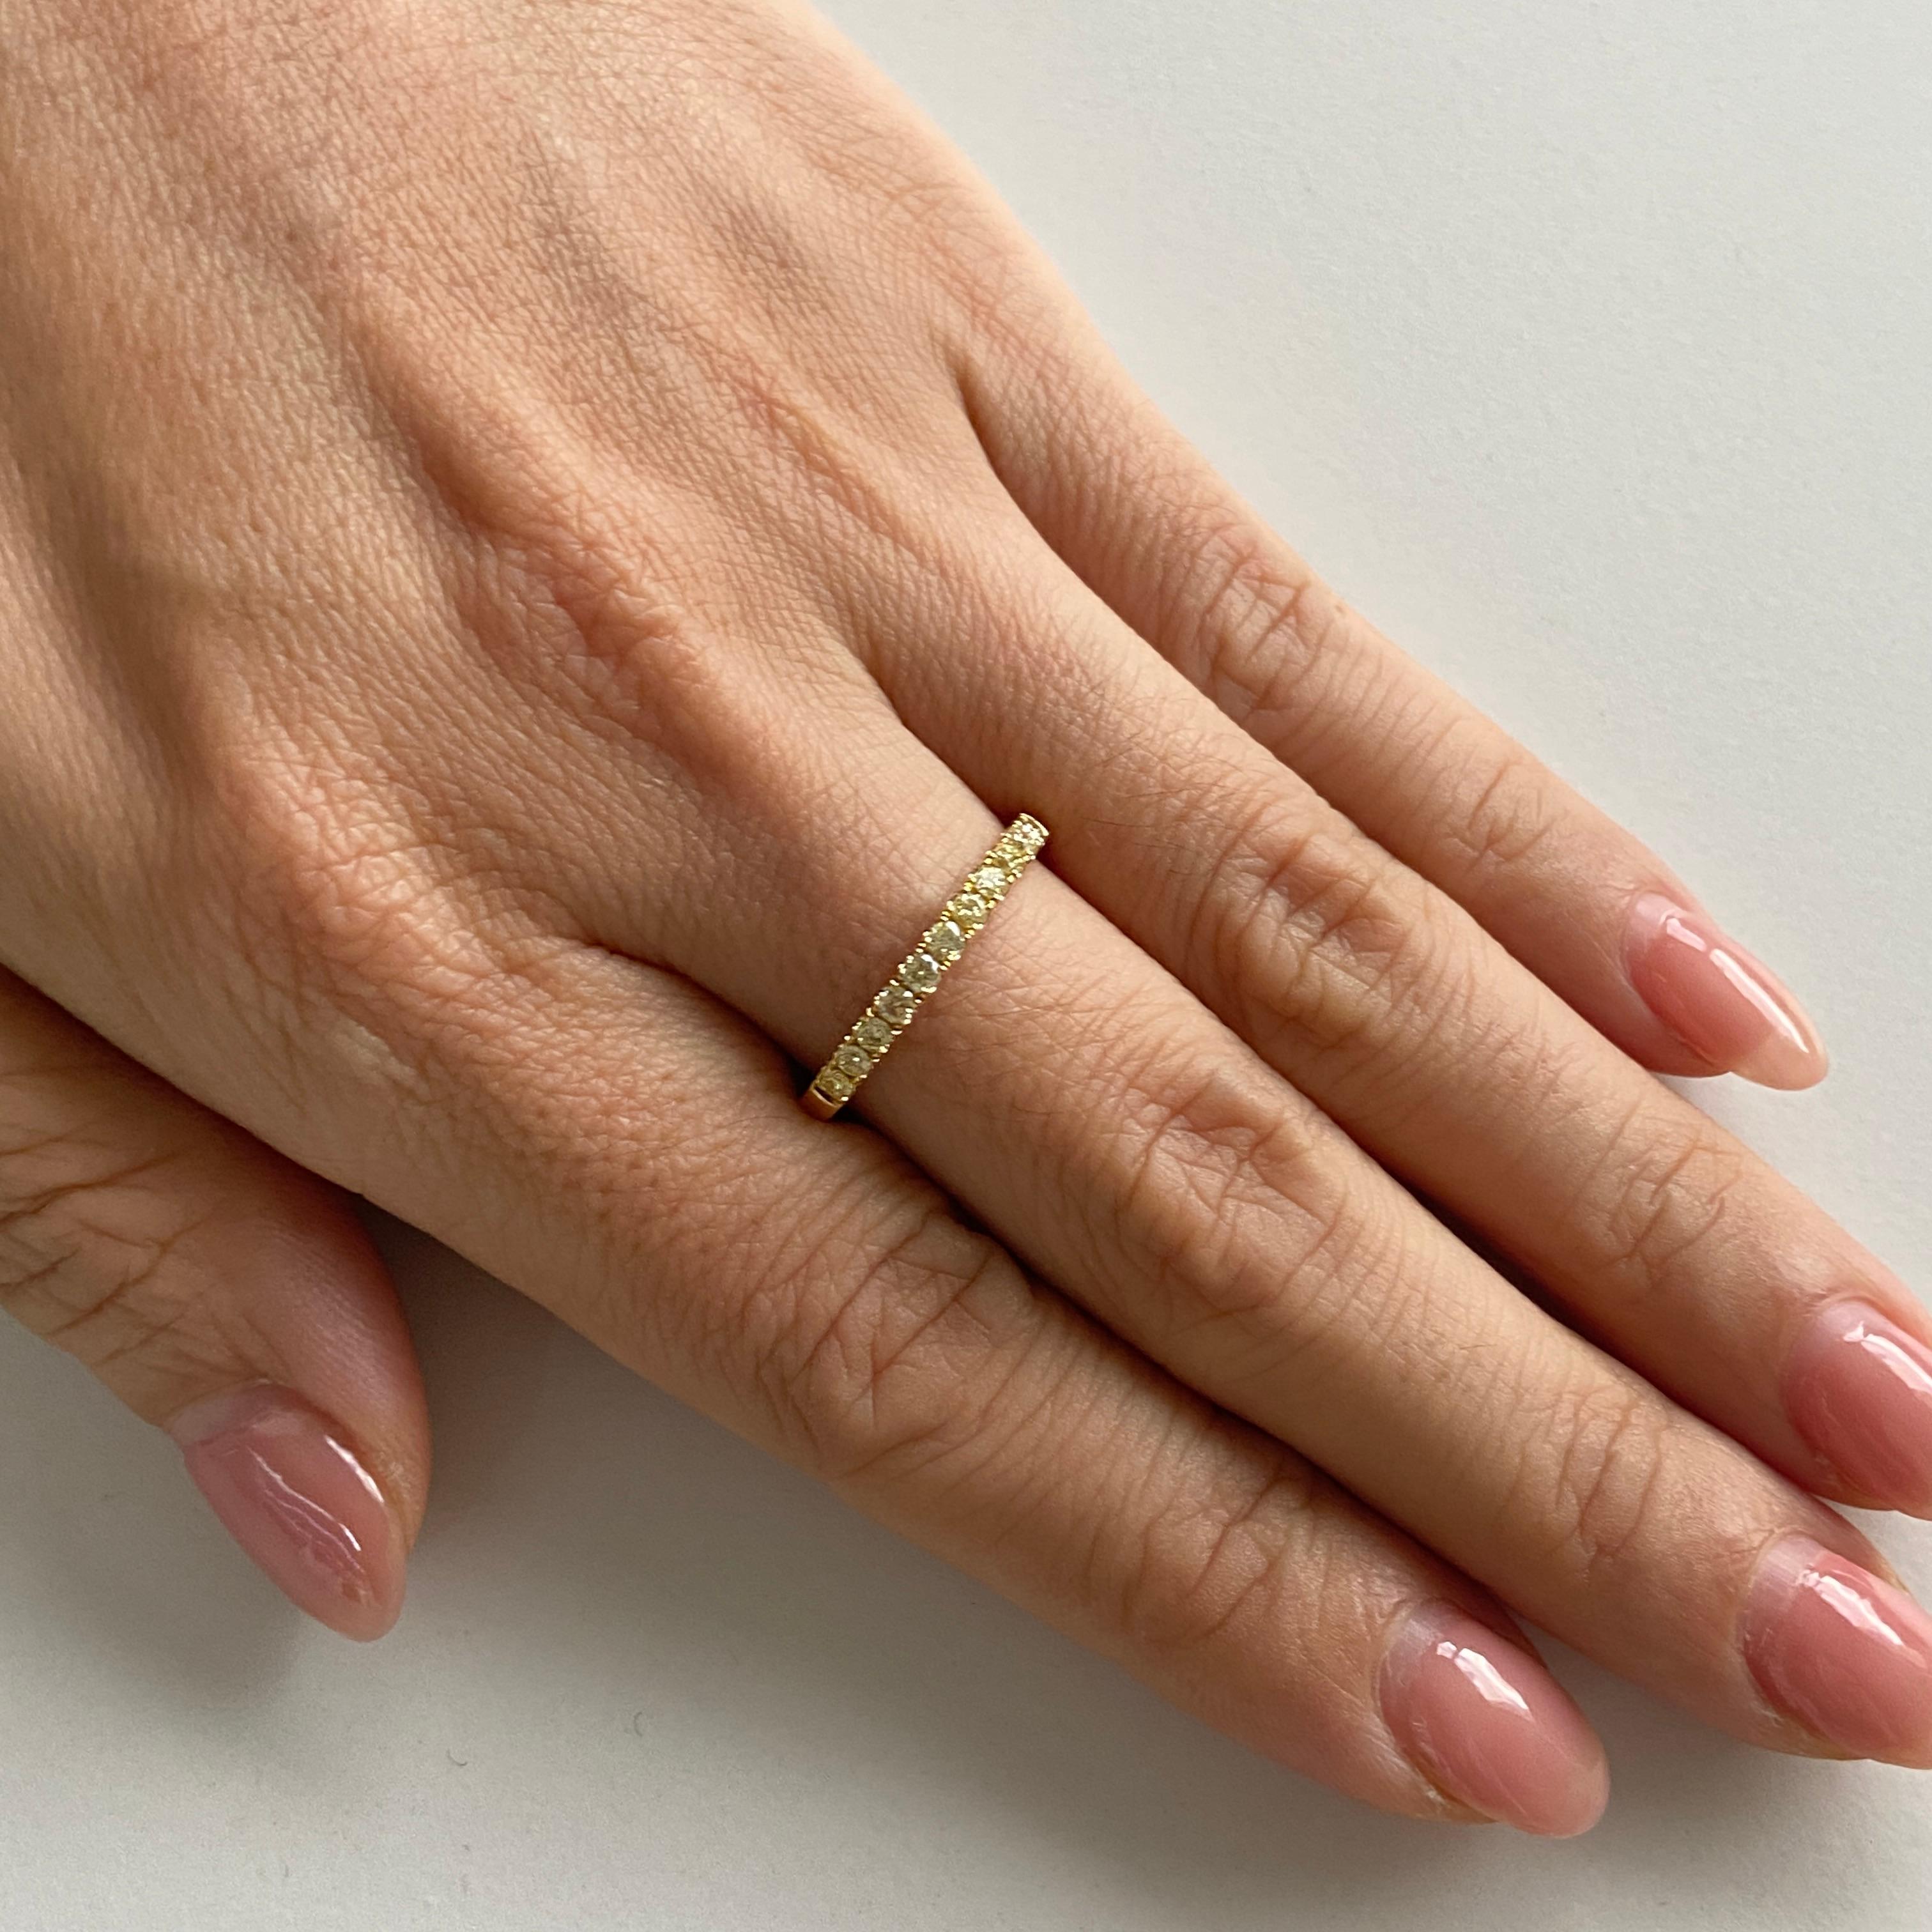 Ein eleganter Ring mit gelben Diamanten mit rundem Brillantschliff, eingefasst in ein Band aus 18 Karat Gold, das zeitlosen Stil und Charme versprüht 

Gelbe Diamanten - 0,35 Karat

HYT Jewelry ist ein Unternehmen in Privatbesitz mit Hauptsitz in